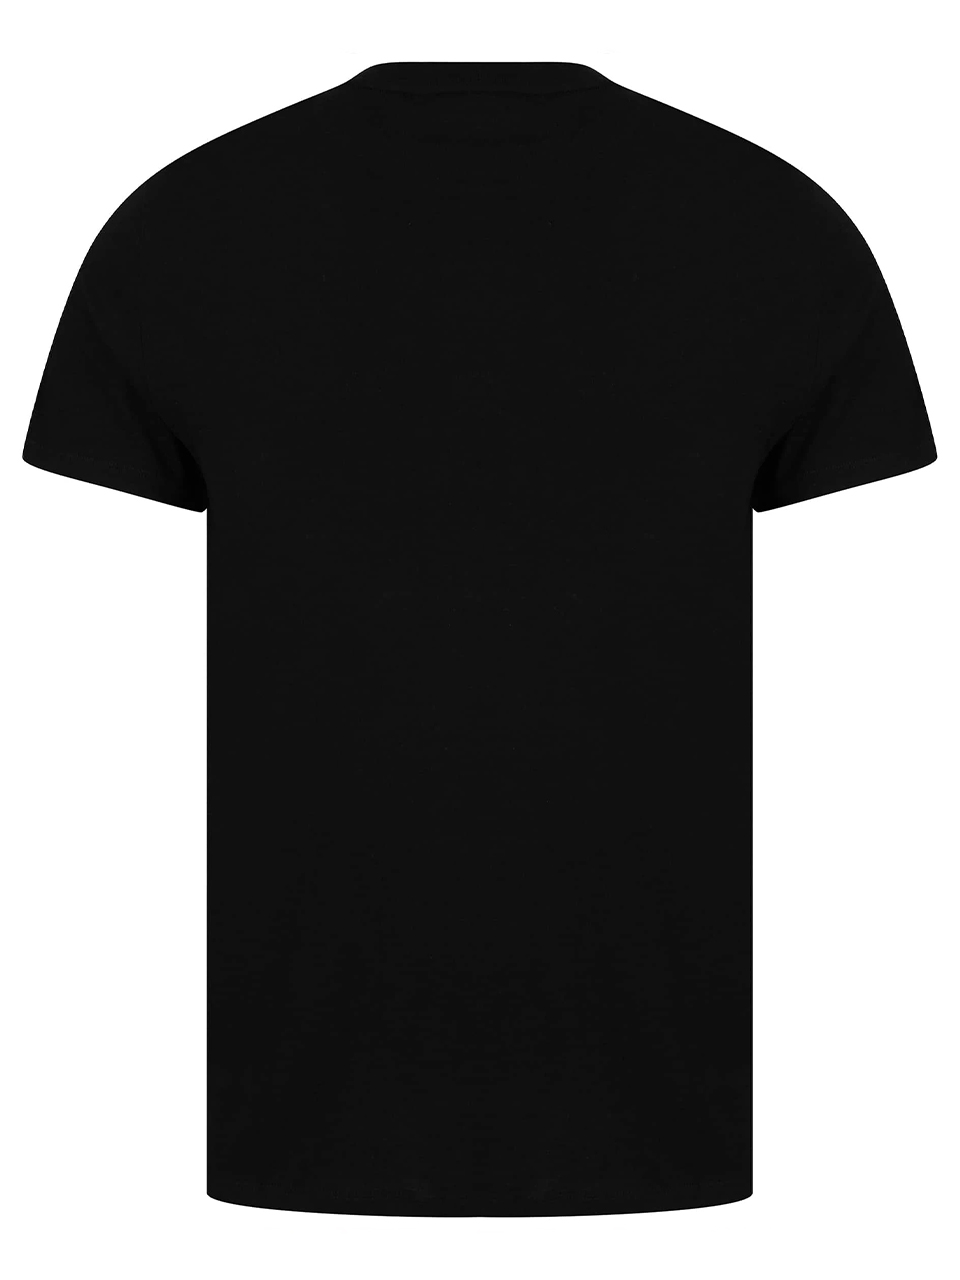 Imagem de: Camiseta Lacoste Preta com Logo